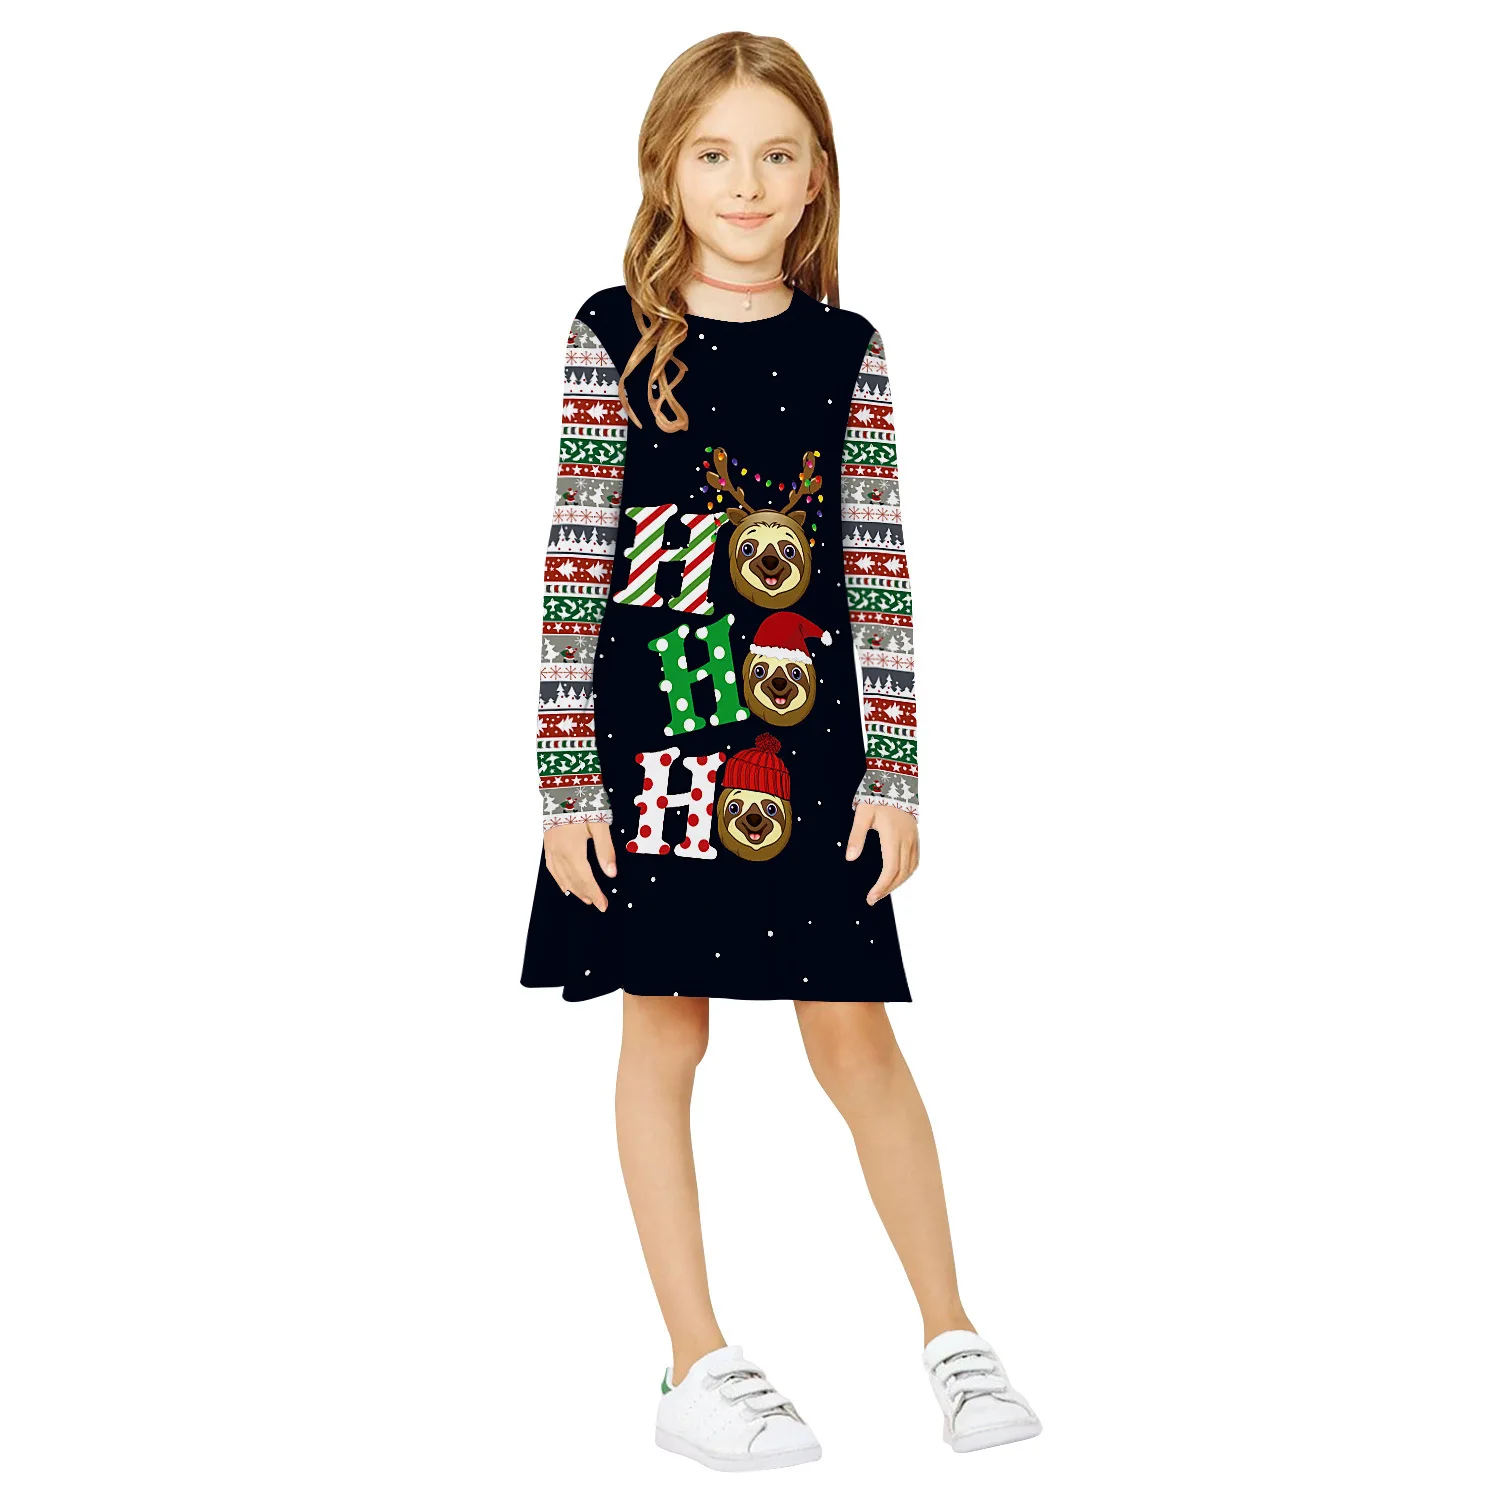 WEPBEL/платье для маленьких девочек; рождественское платье для девочек-подростков; рождественское платье с длинными рукавами и 3D принтом; одежда